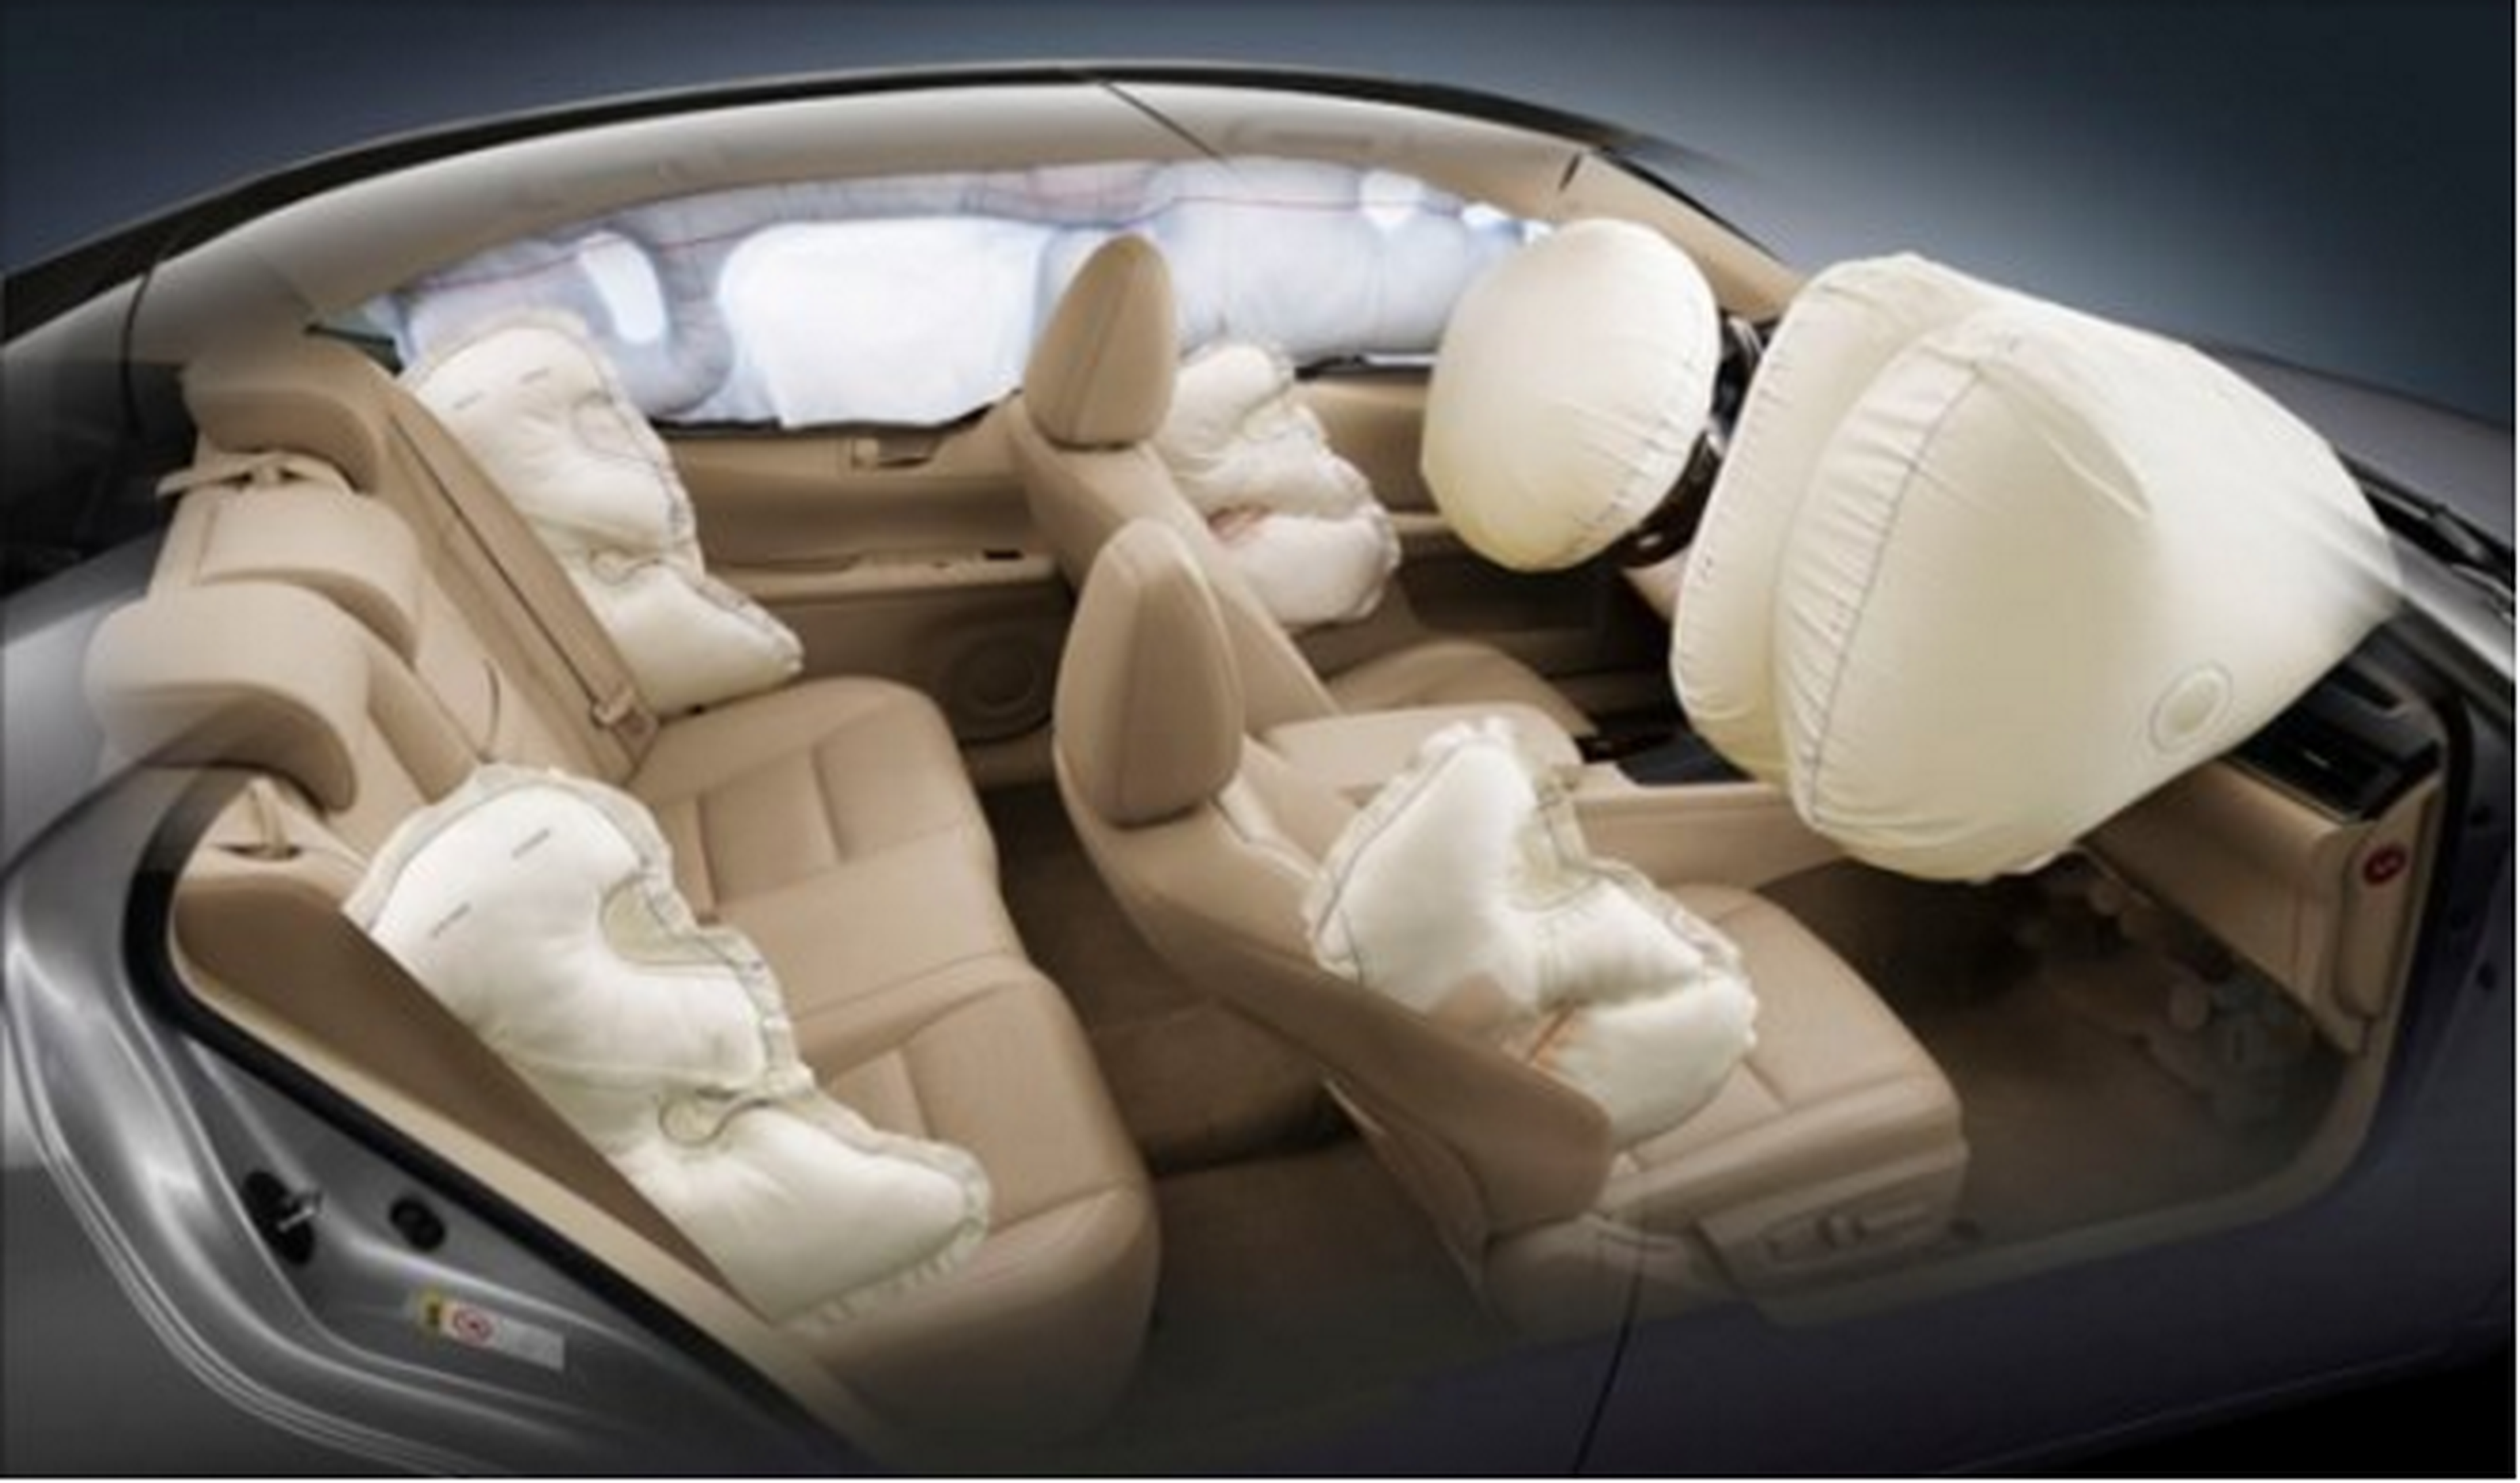 100 millones de coches afectados por los 'airbag' asesinos